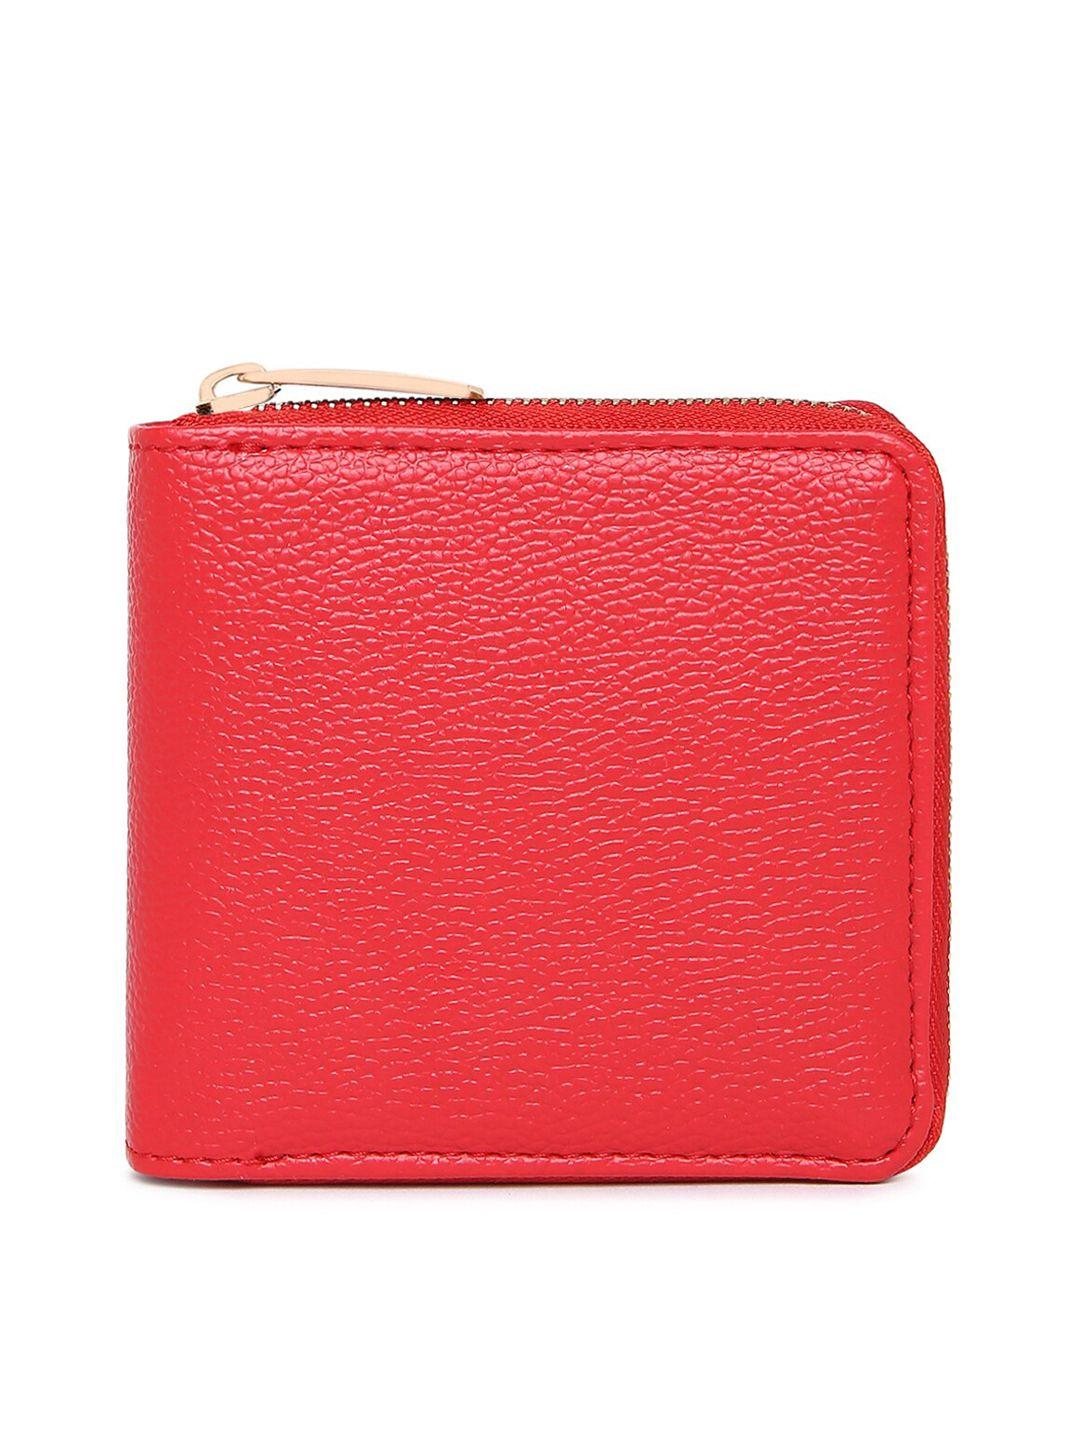 kleio women red textured pu zip around wallet